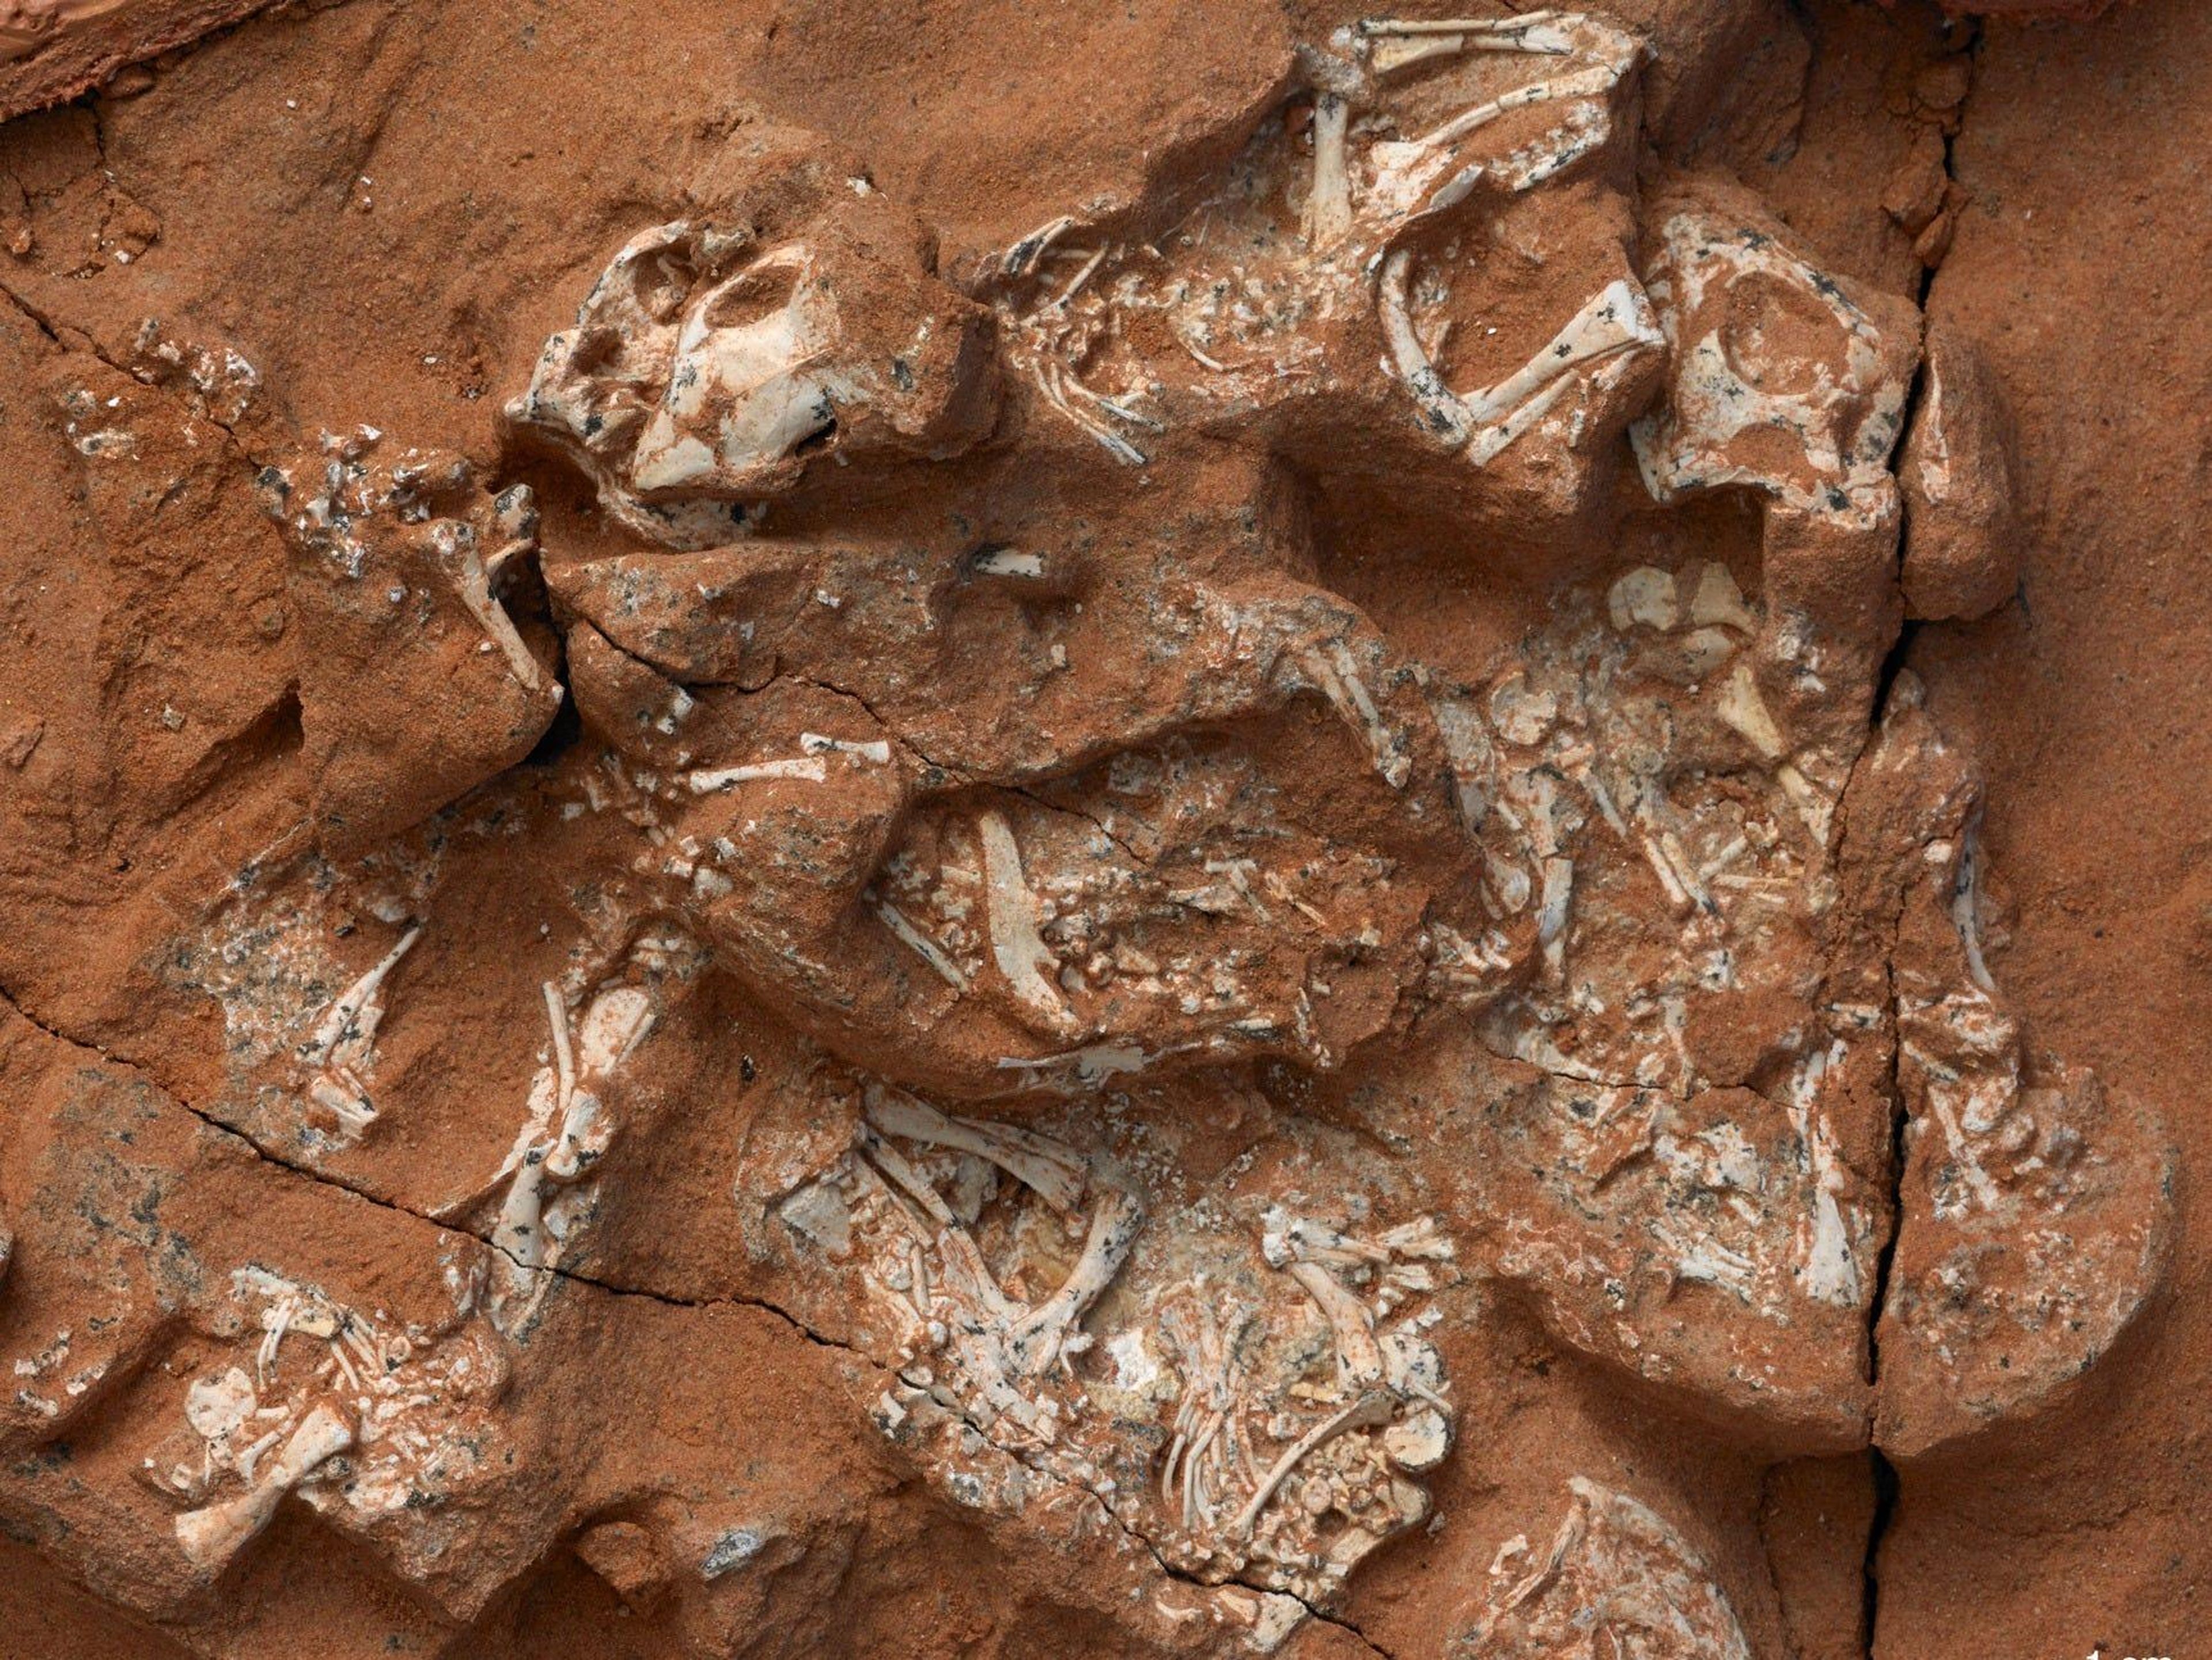 Este espécimen de Protoceratops excepcionalmente conservado incluye seis embriones que conservan esqueletos casi completos.